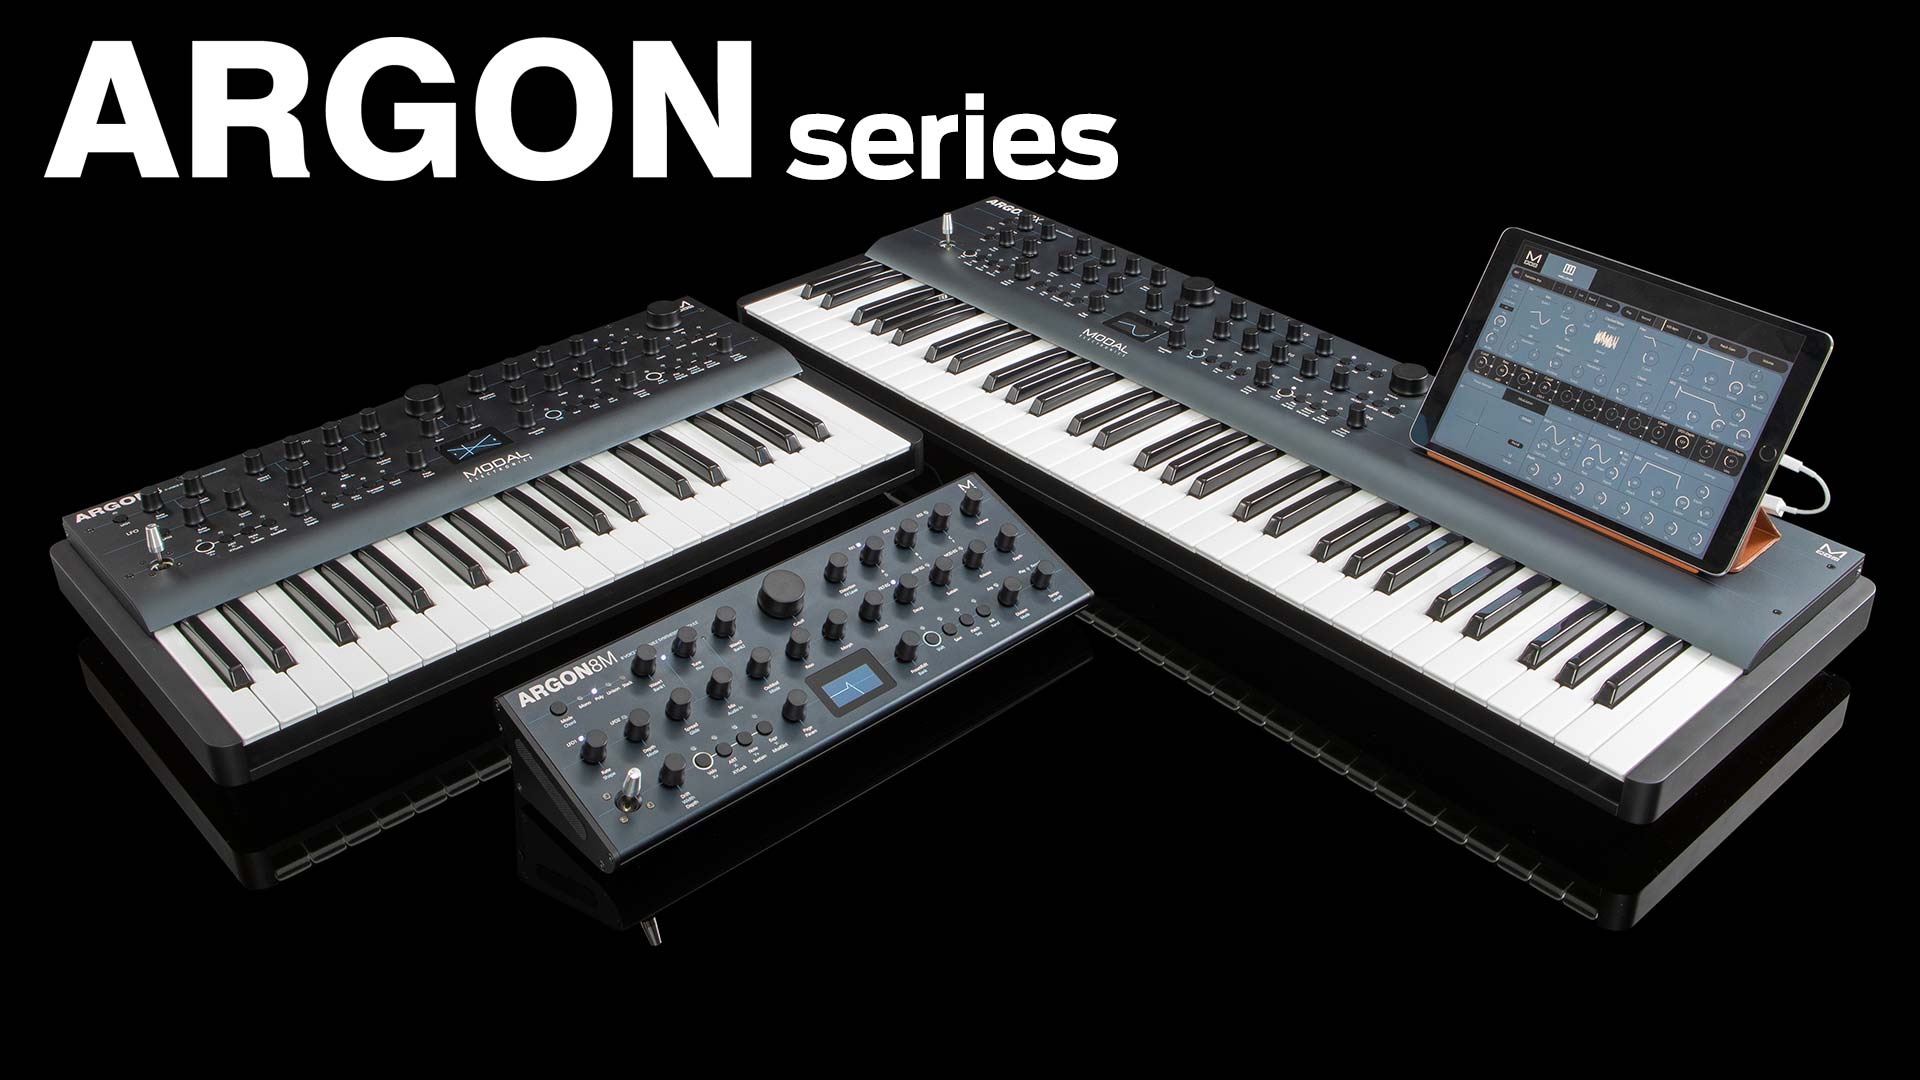 Potencia de tabla de ondas (wavetable) y opciones ampliadas para diseño sonoro forman parte de la promesa de Modal Electronics ARGON series